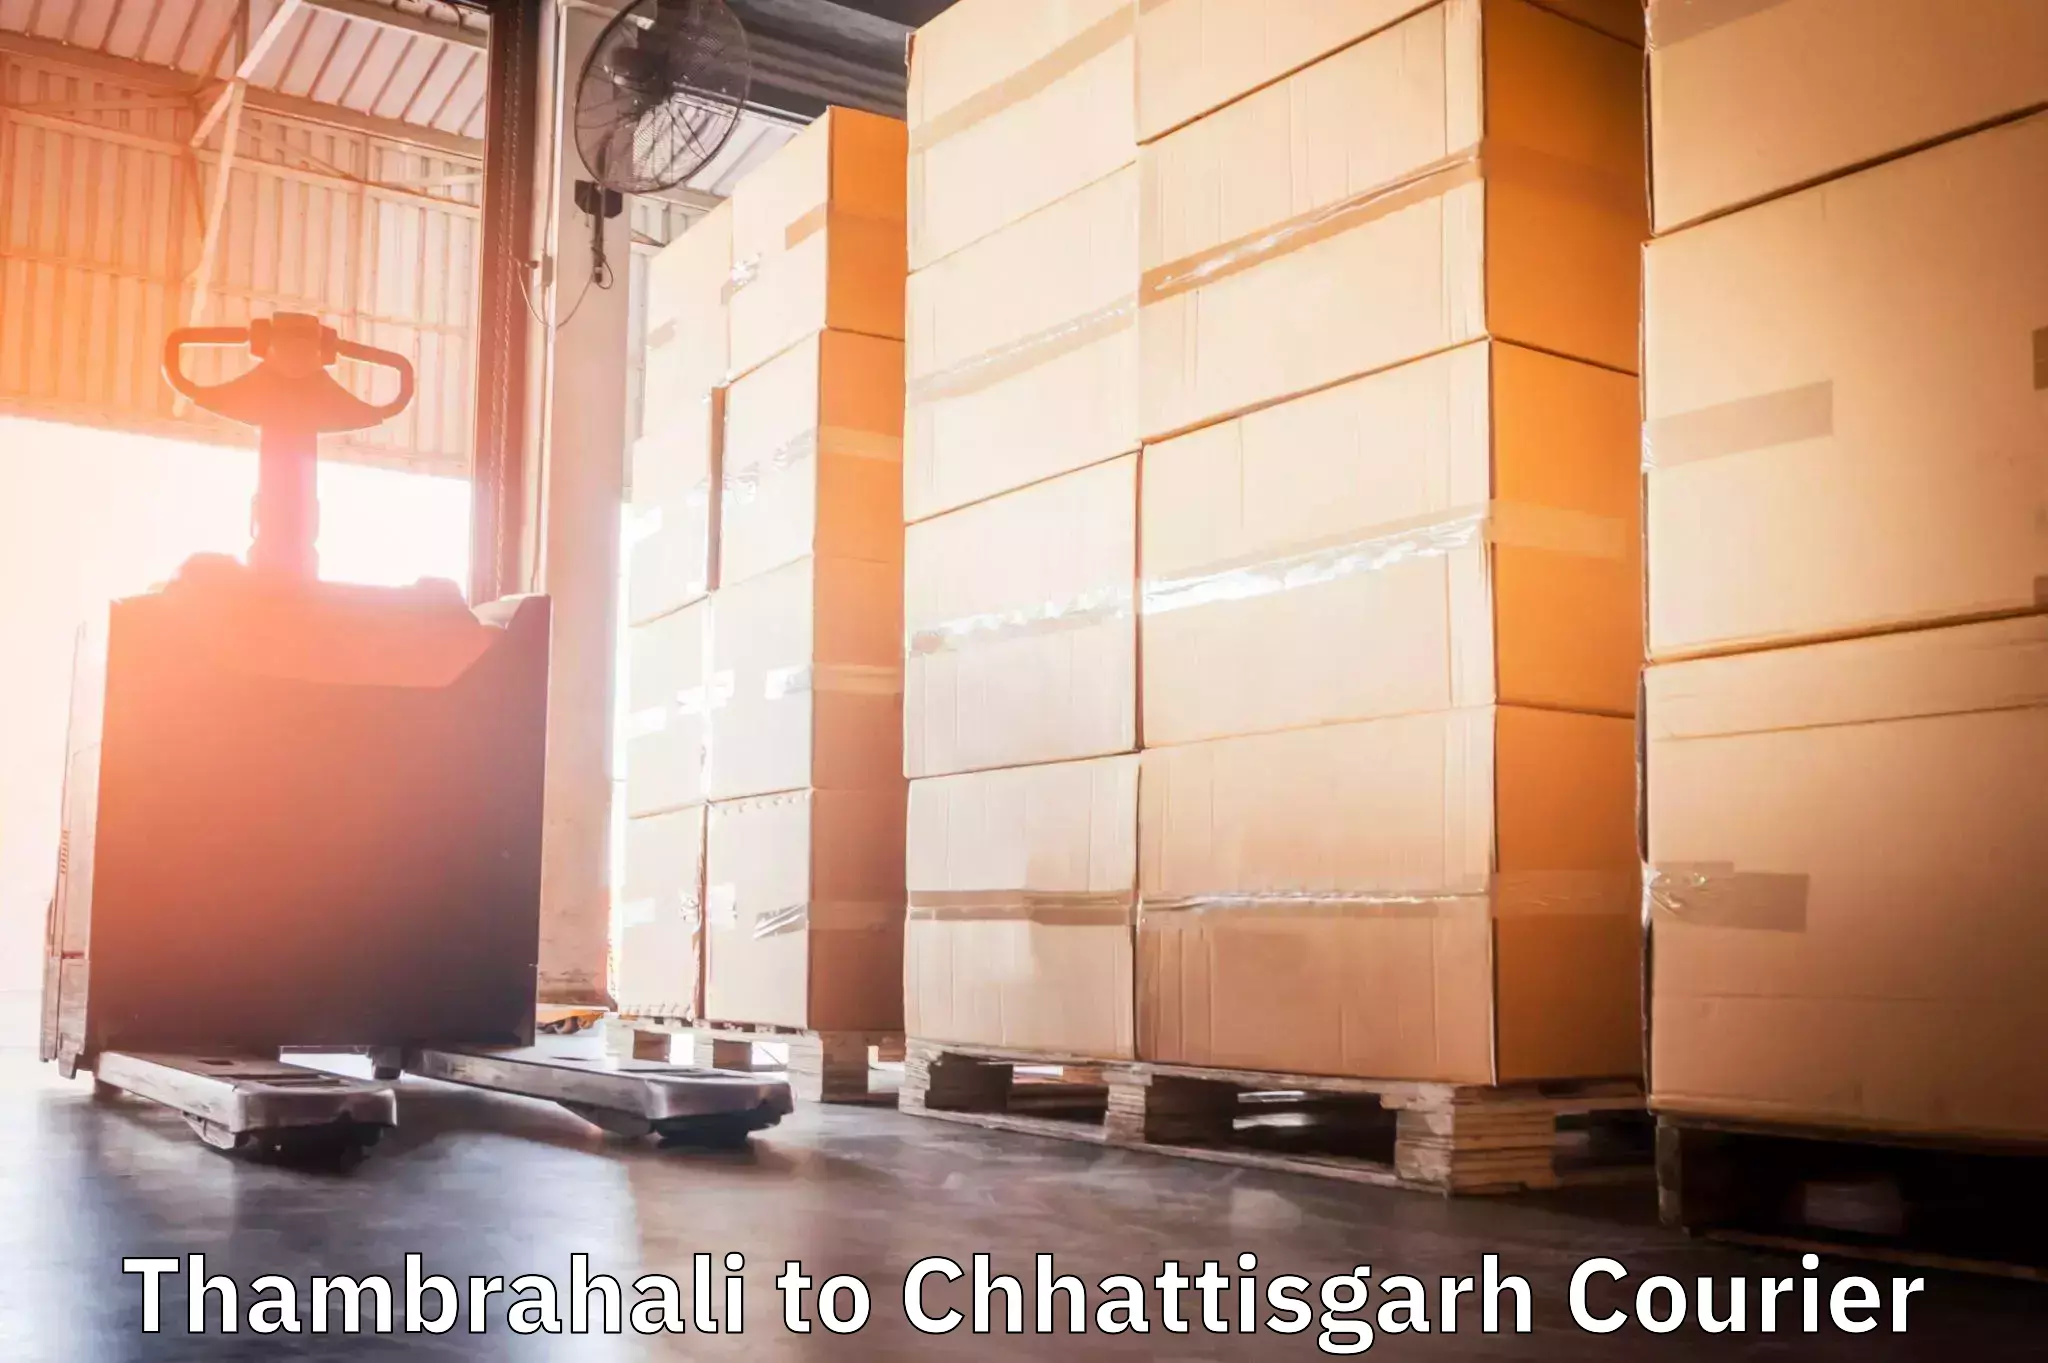 Customized shipping options Thambrahali to Gariaband